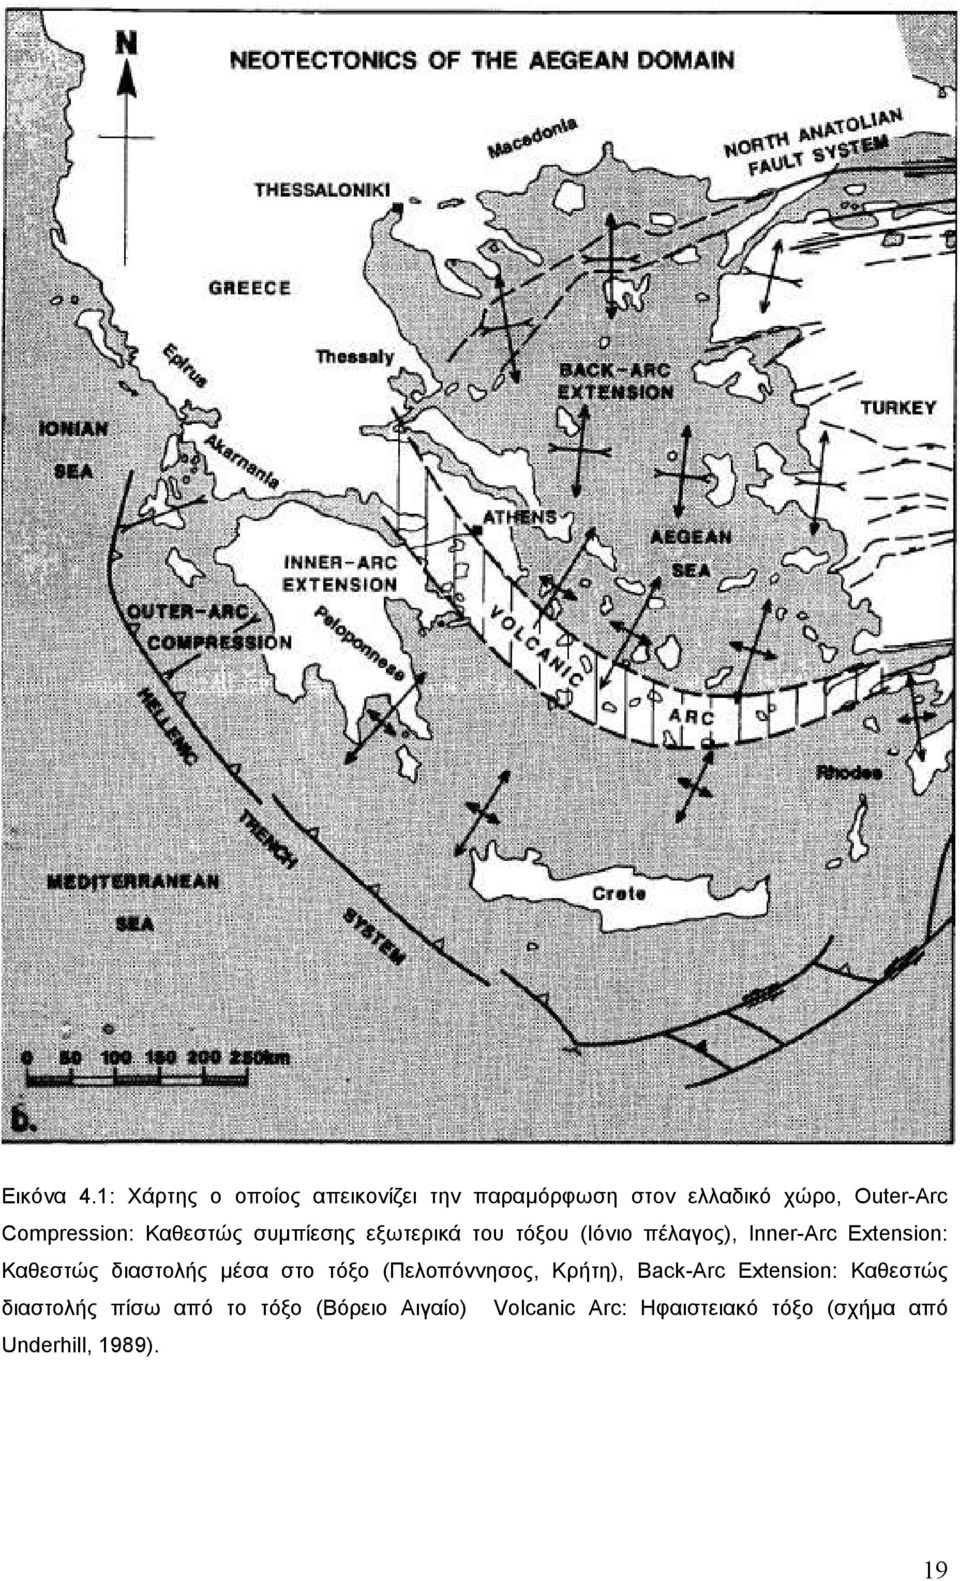 Καθεστώς συµπίεσης εξωτερικά του τόξου (Ιόνιο πέλαγος), Inner-Arc Extension: Καθεστώς